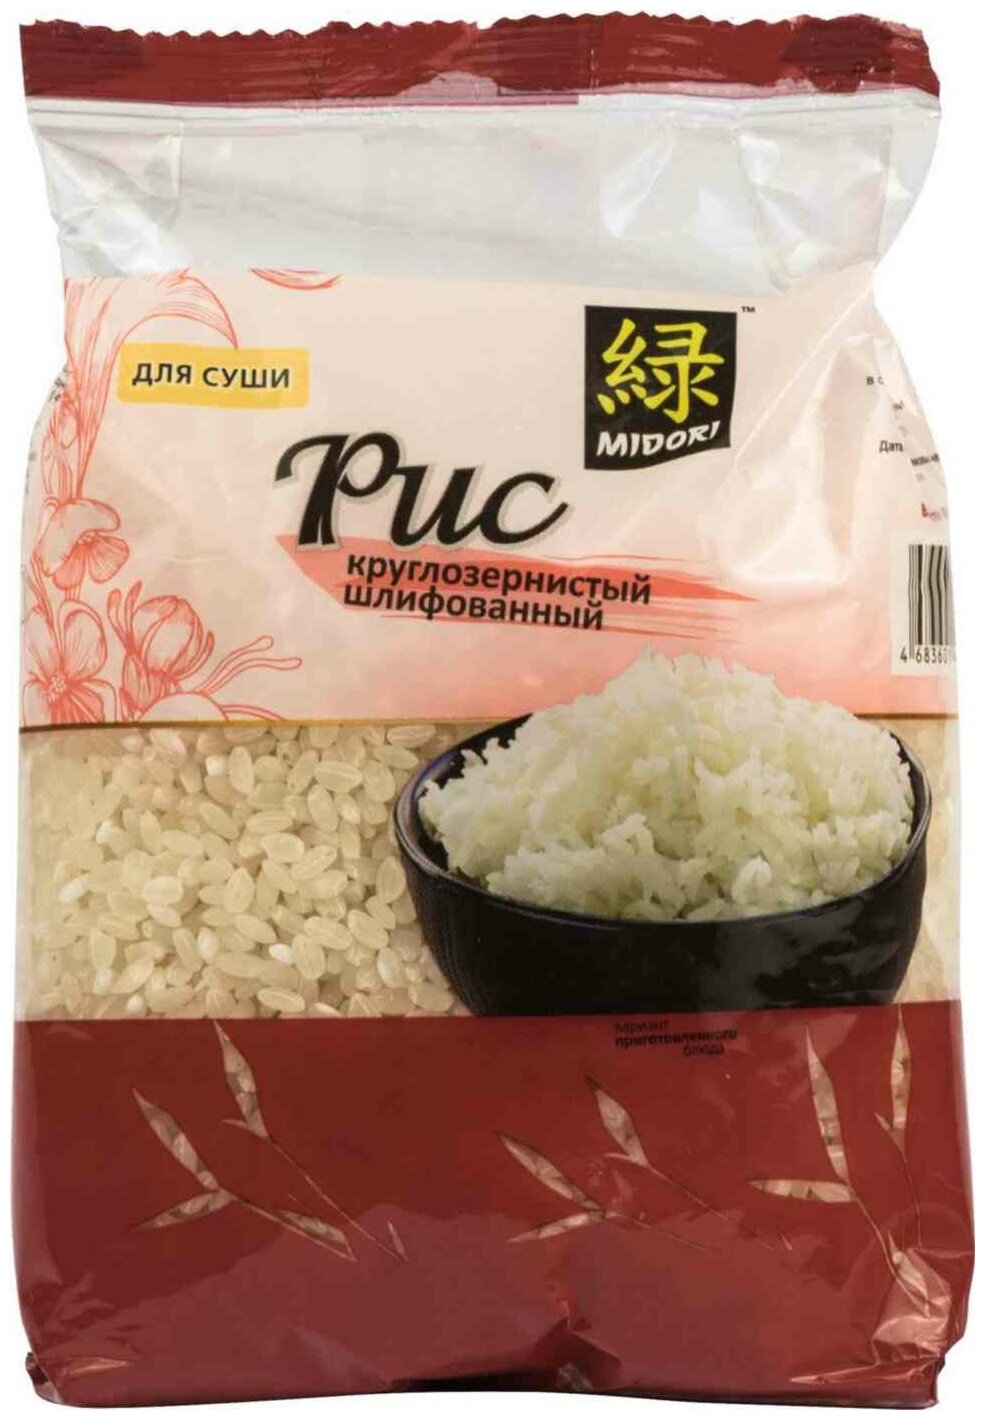 Рис для суши круглозерный (sushu rice) Midori | Мидори 450г - фотография № 5